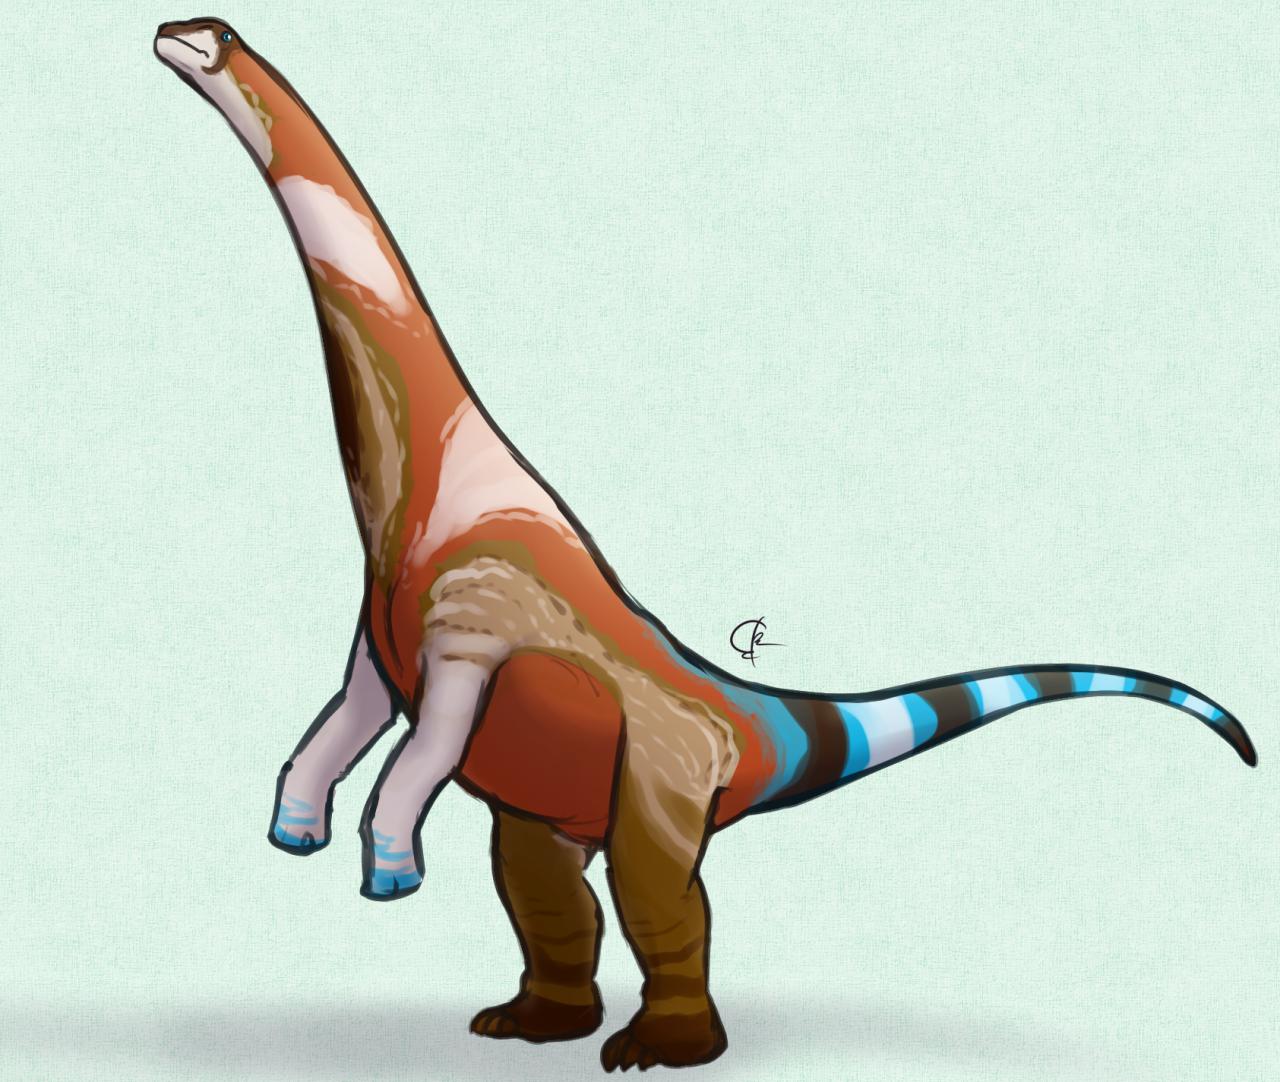 Moabosaurus